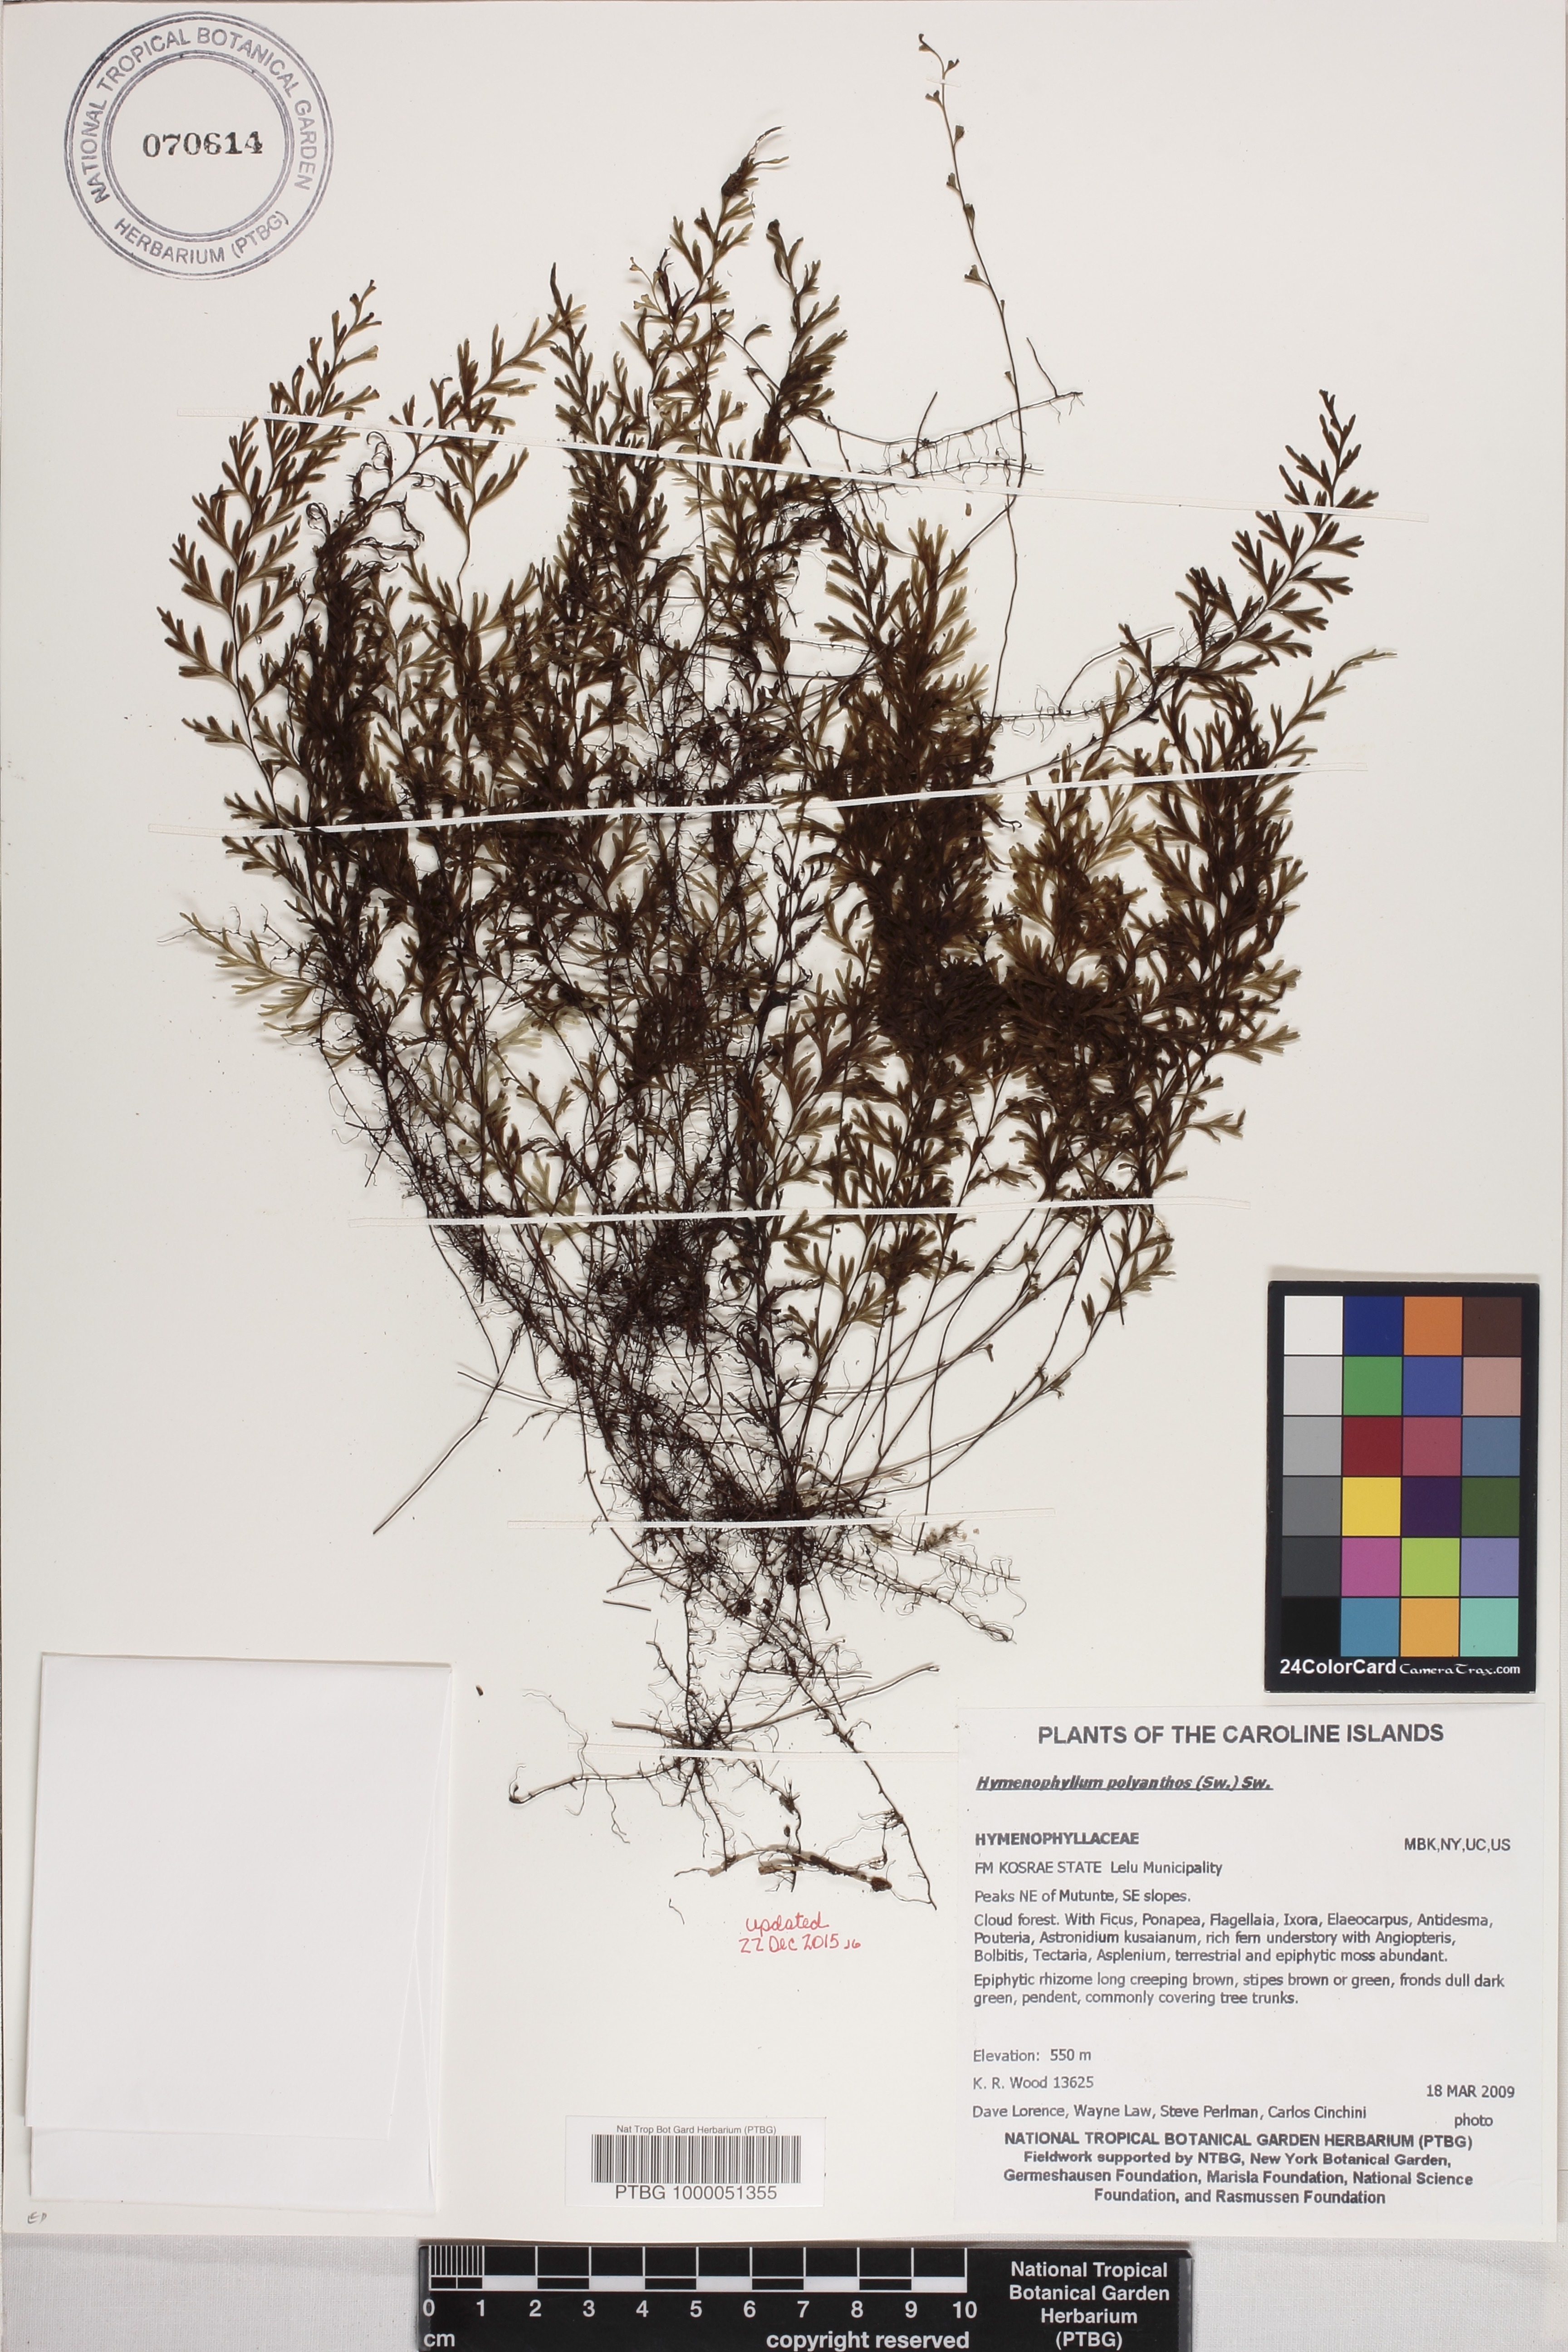 Hymenophyllum image